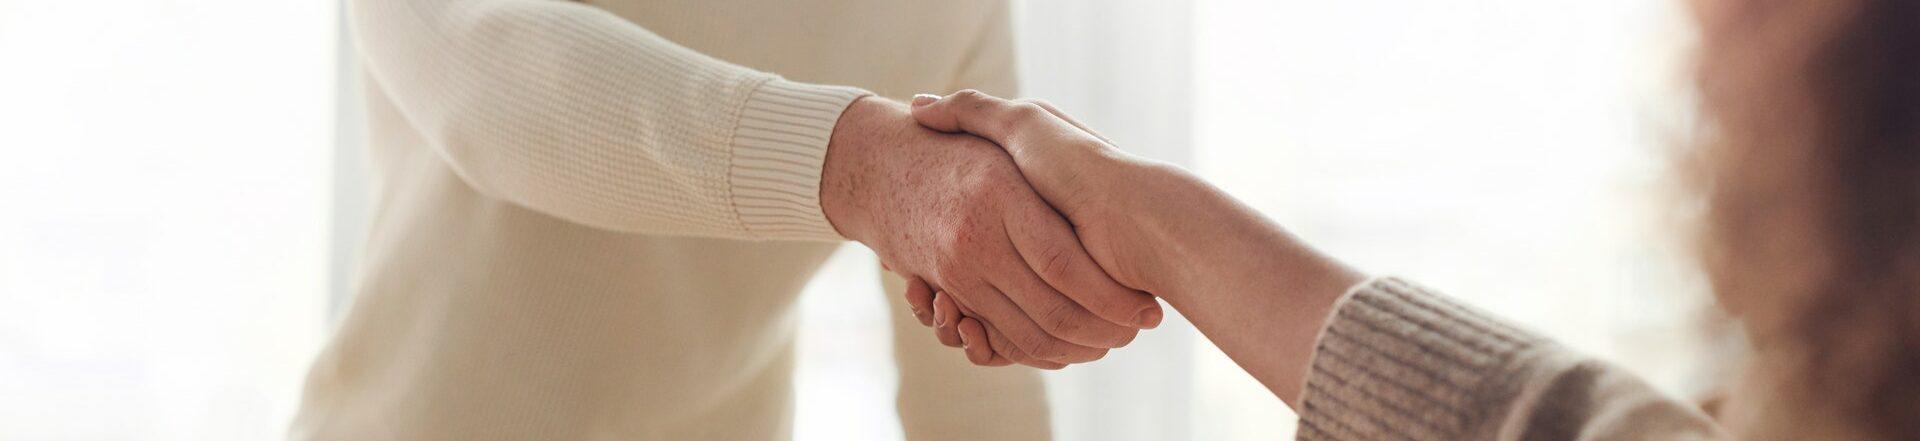 Twee mensen schudden elkaar de hand na het sluiten van een overeenkomst